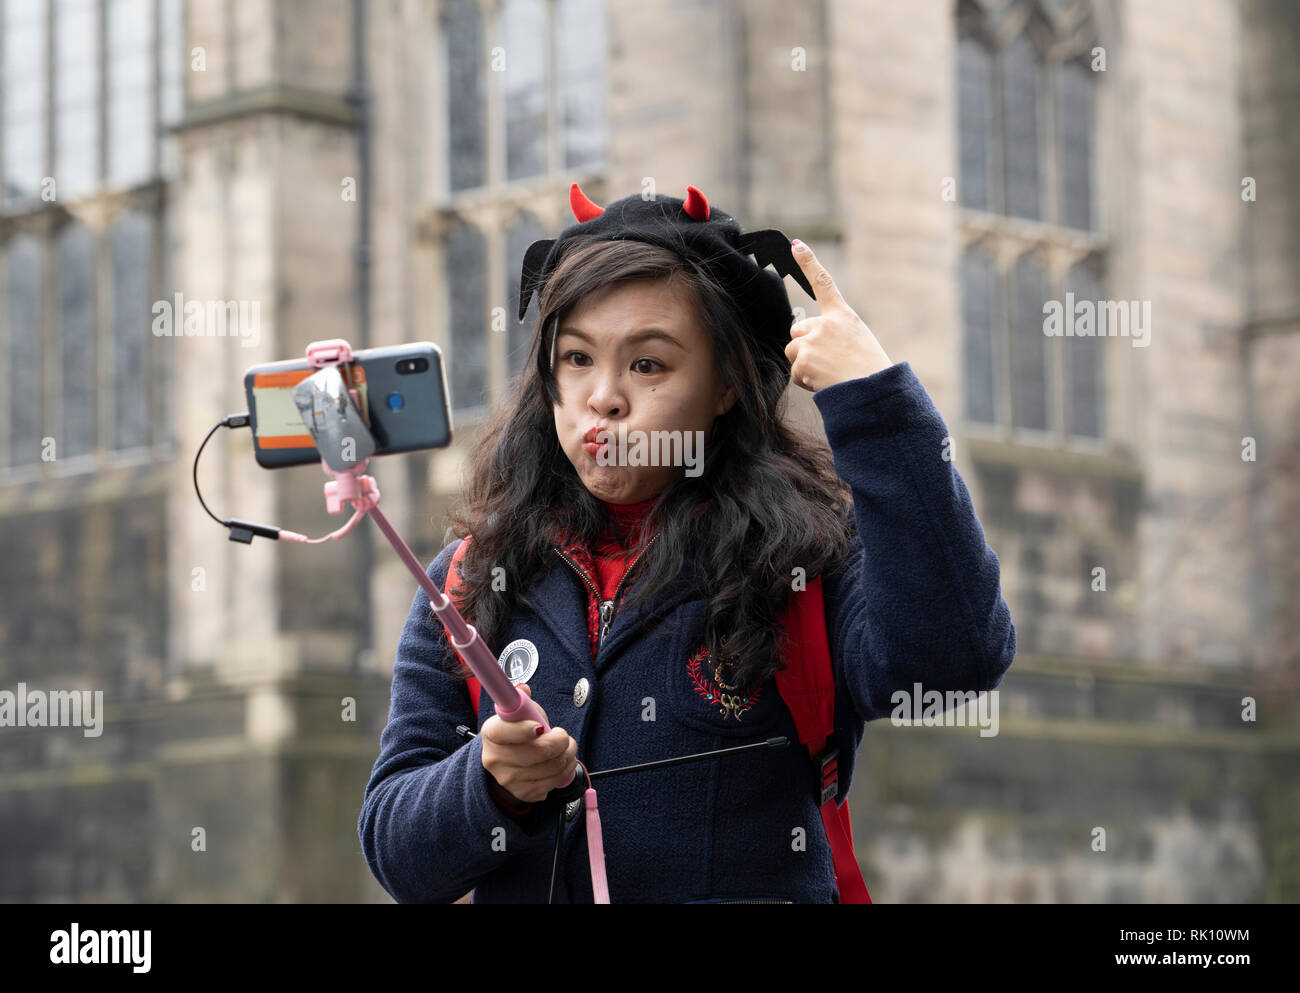 Edinburgh, Großbritannien. 8. Feb 2019. Junge chinesische weibliche Touristen, lustiges Gesicht während der Einnahme von selfie Foto in der Altstadt von Edinburgh, Schottland, Großbritannien Stockfoto